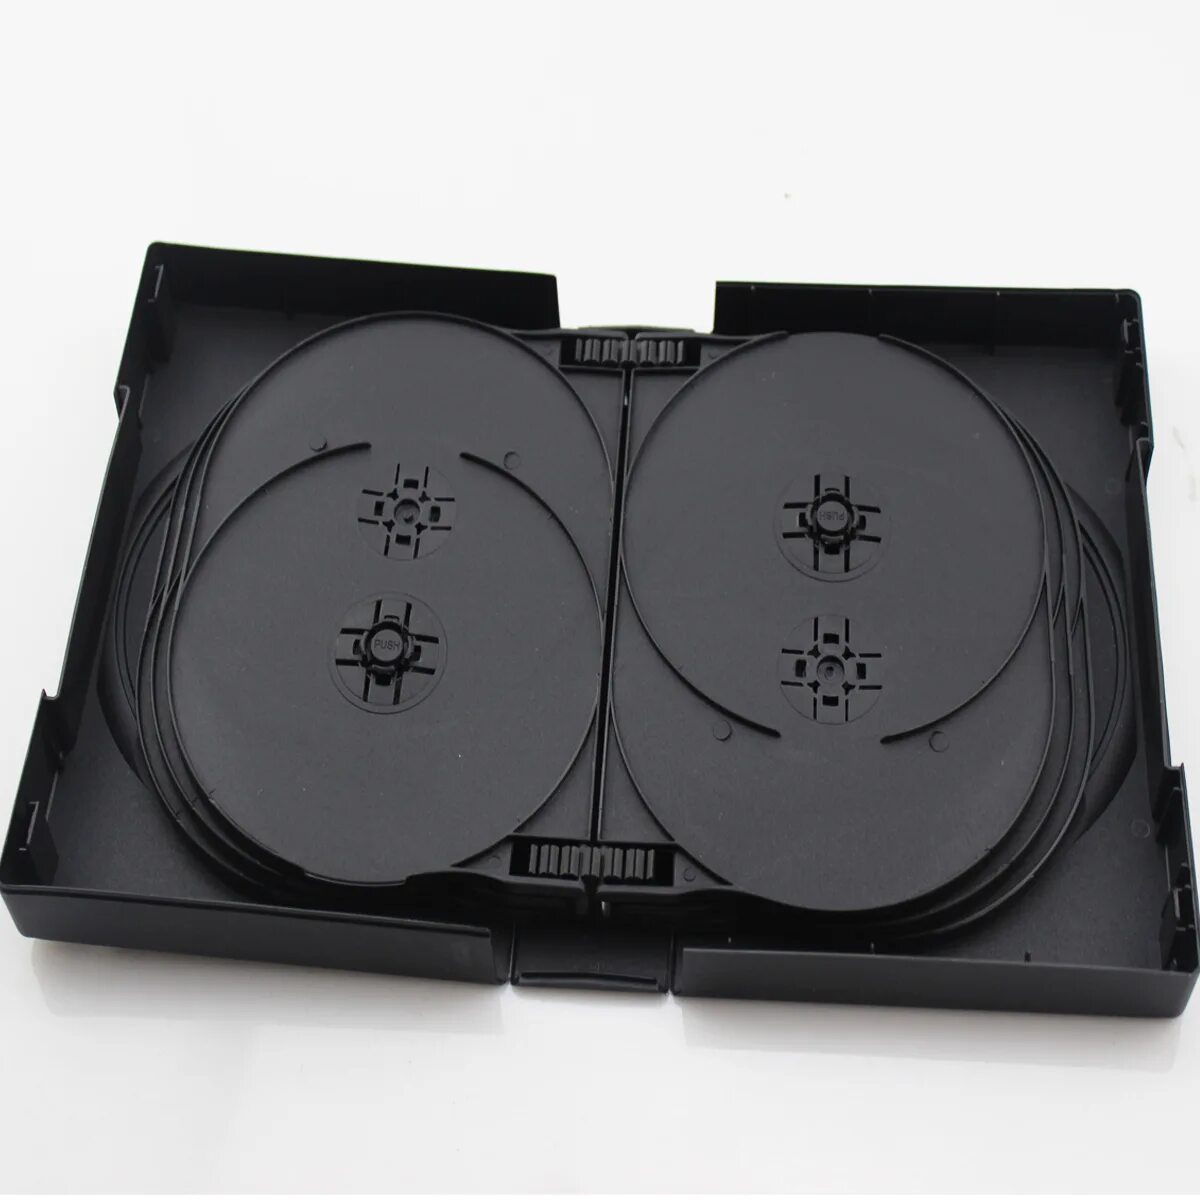 Коробка CD Box 1 диск Jewel Black. Упаковка Jewel Box. Картонный бокс Jewel Case. Super Jewel Box 2 DVD.